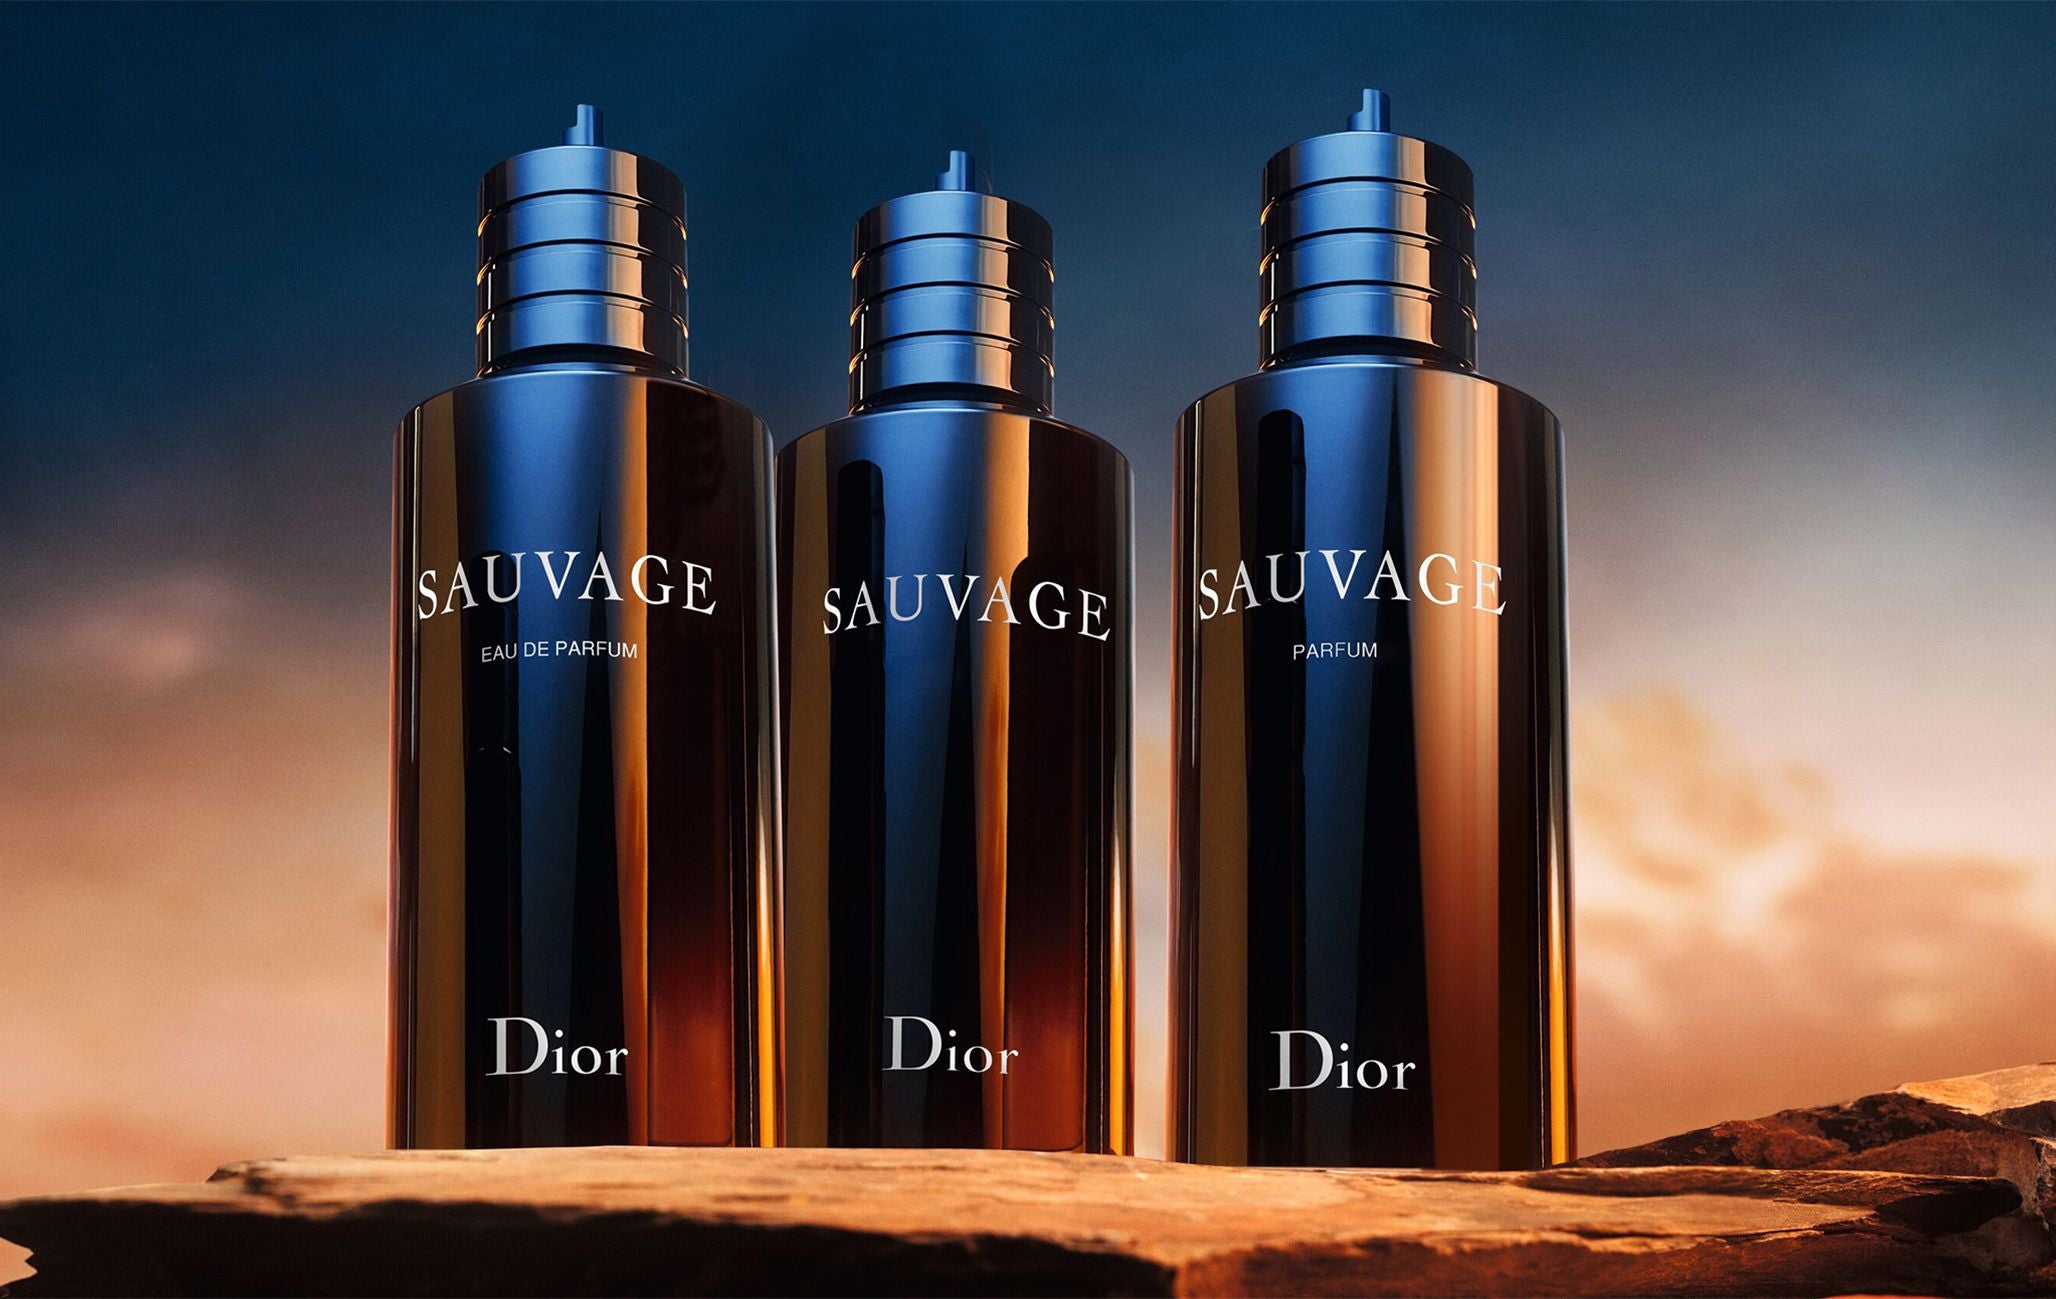 Amazoncom  Dior Sauvage for Men Eau de Parfum Spray 200ml68 oz   Beauty  Personal Care